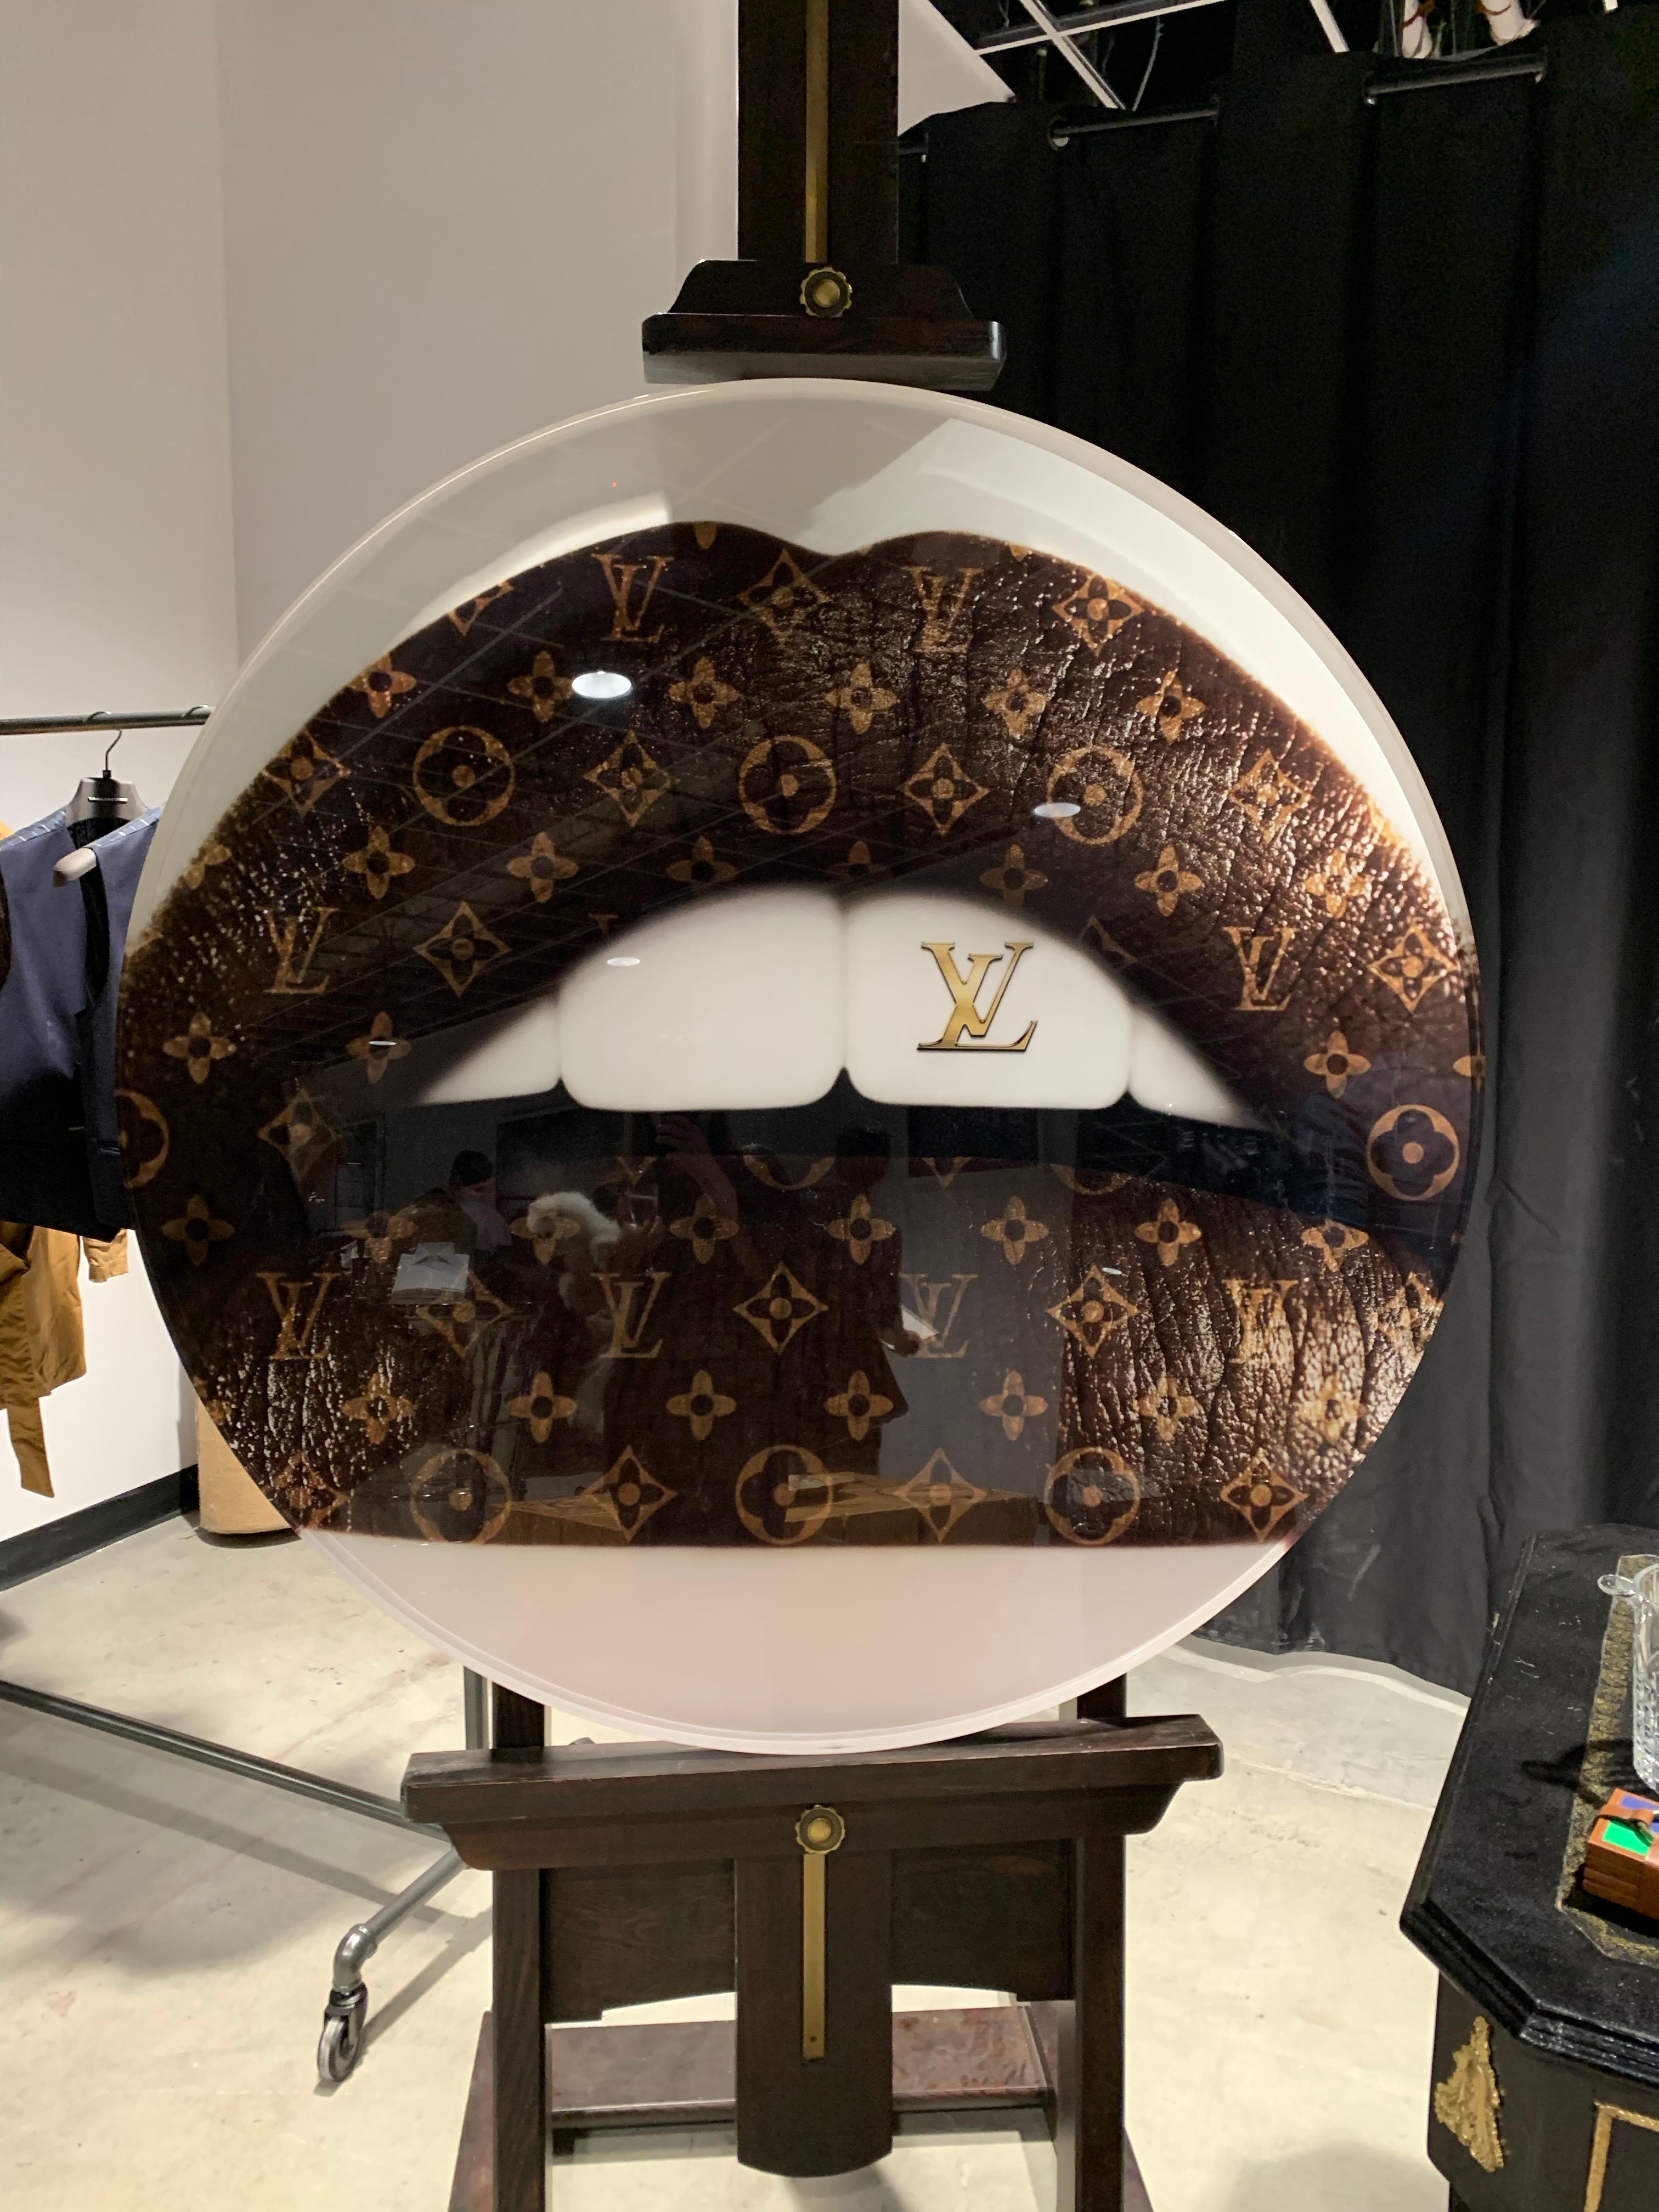 Louis Vuitton XL Lips
50